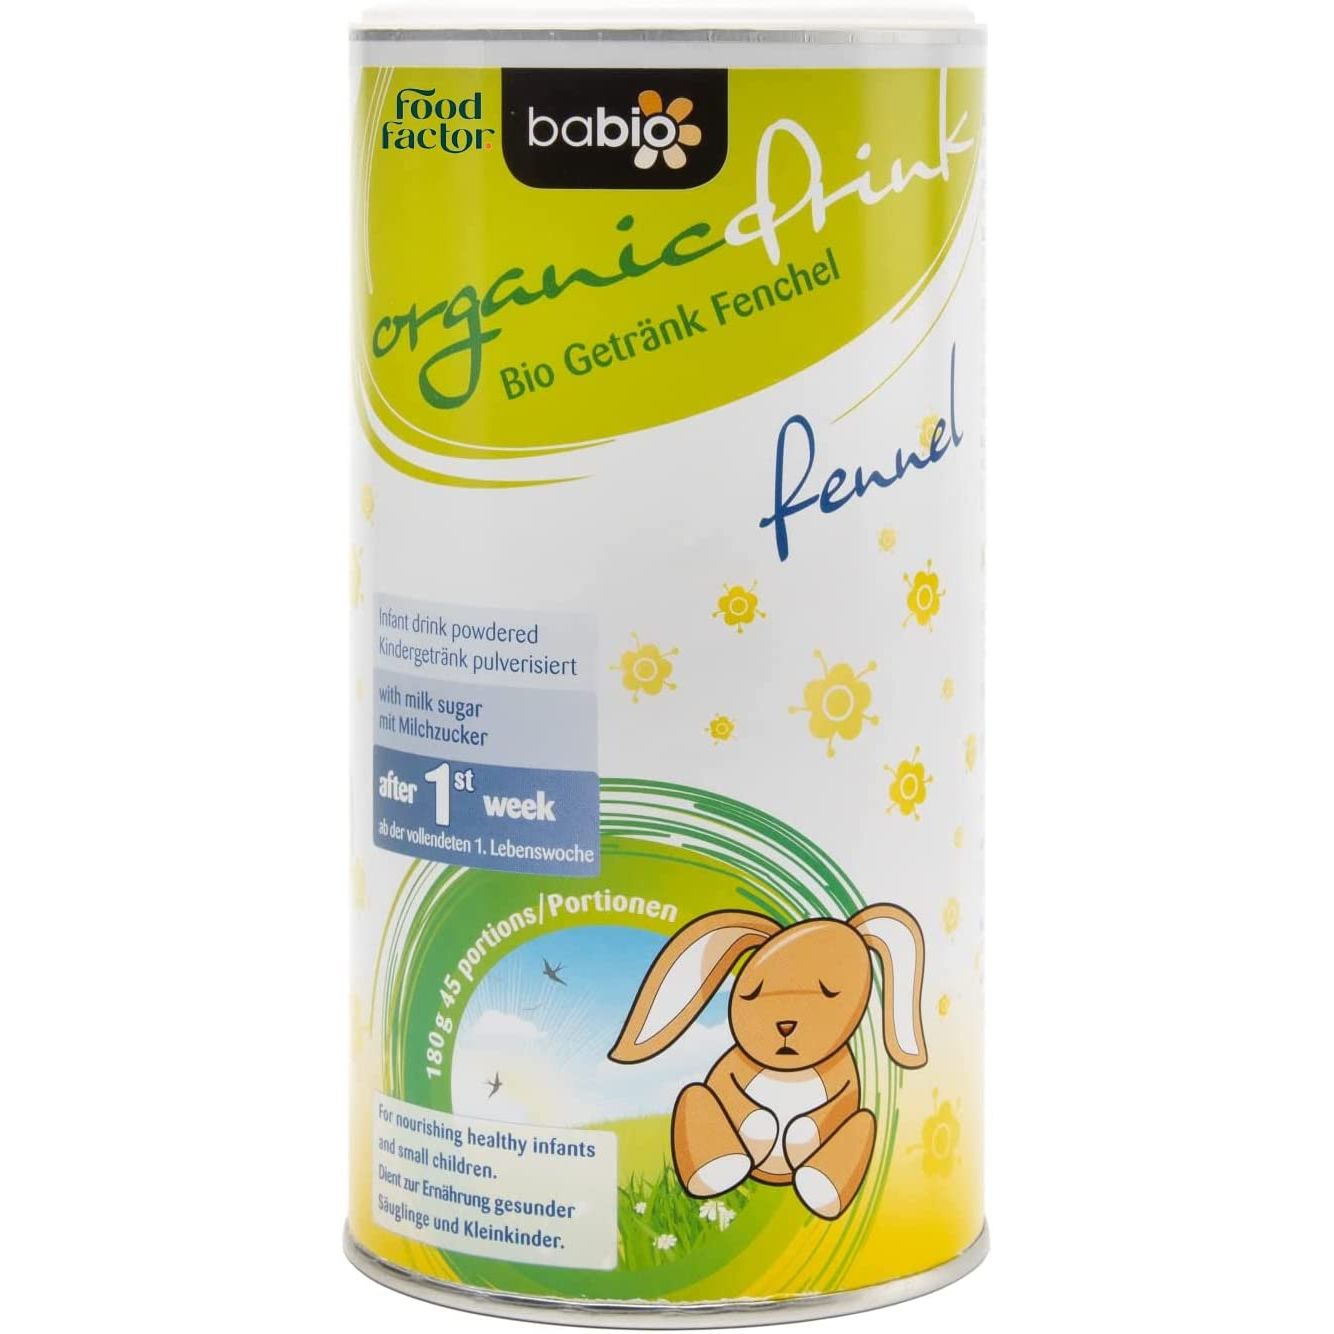 Food Factor Babio Fennel Organic Baby Nutrition Powder Drink - 180g